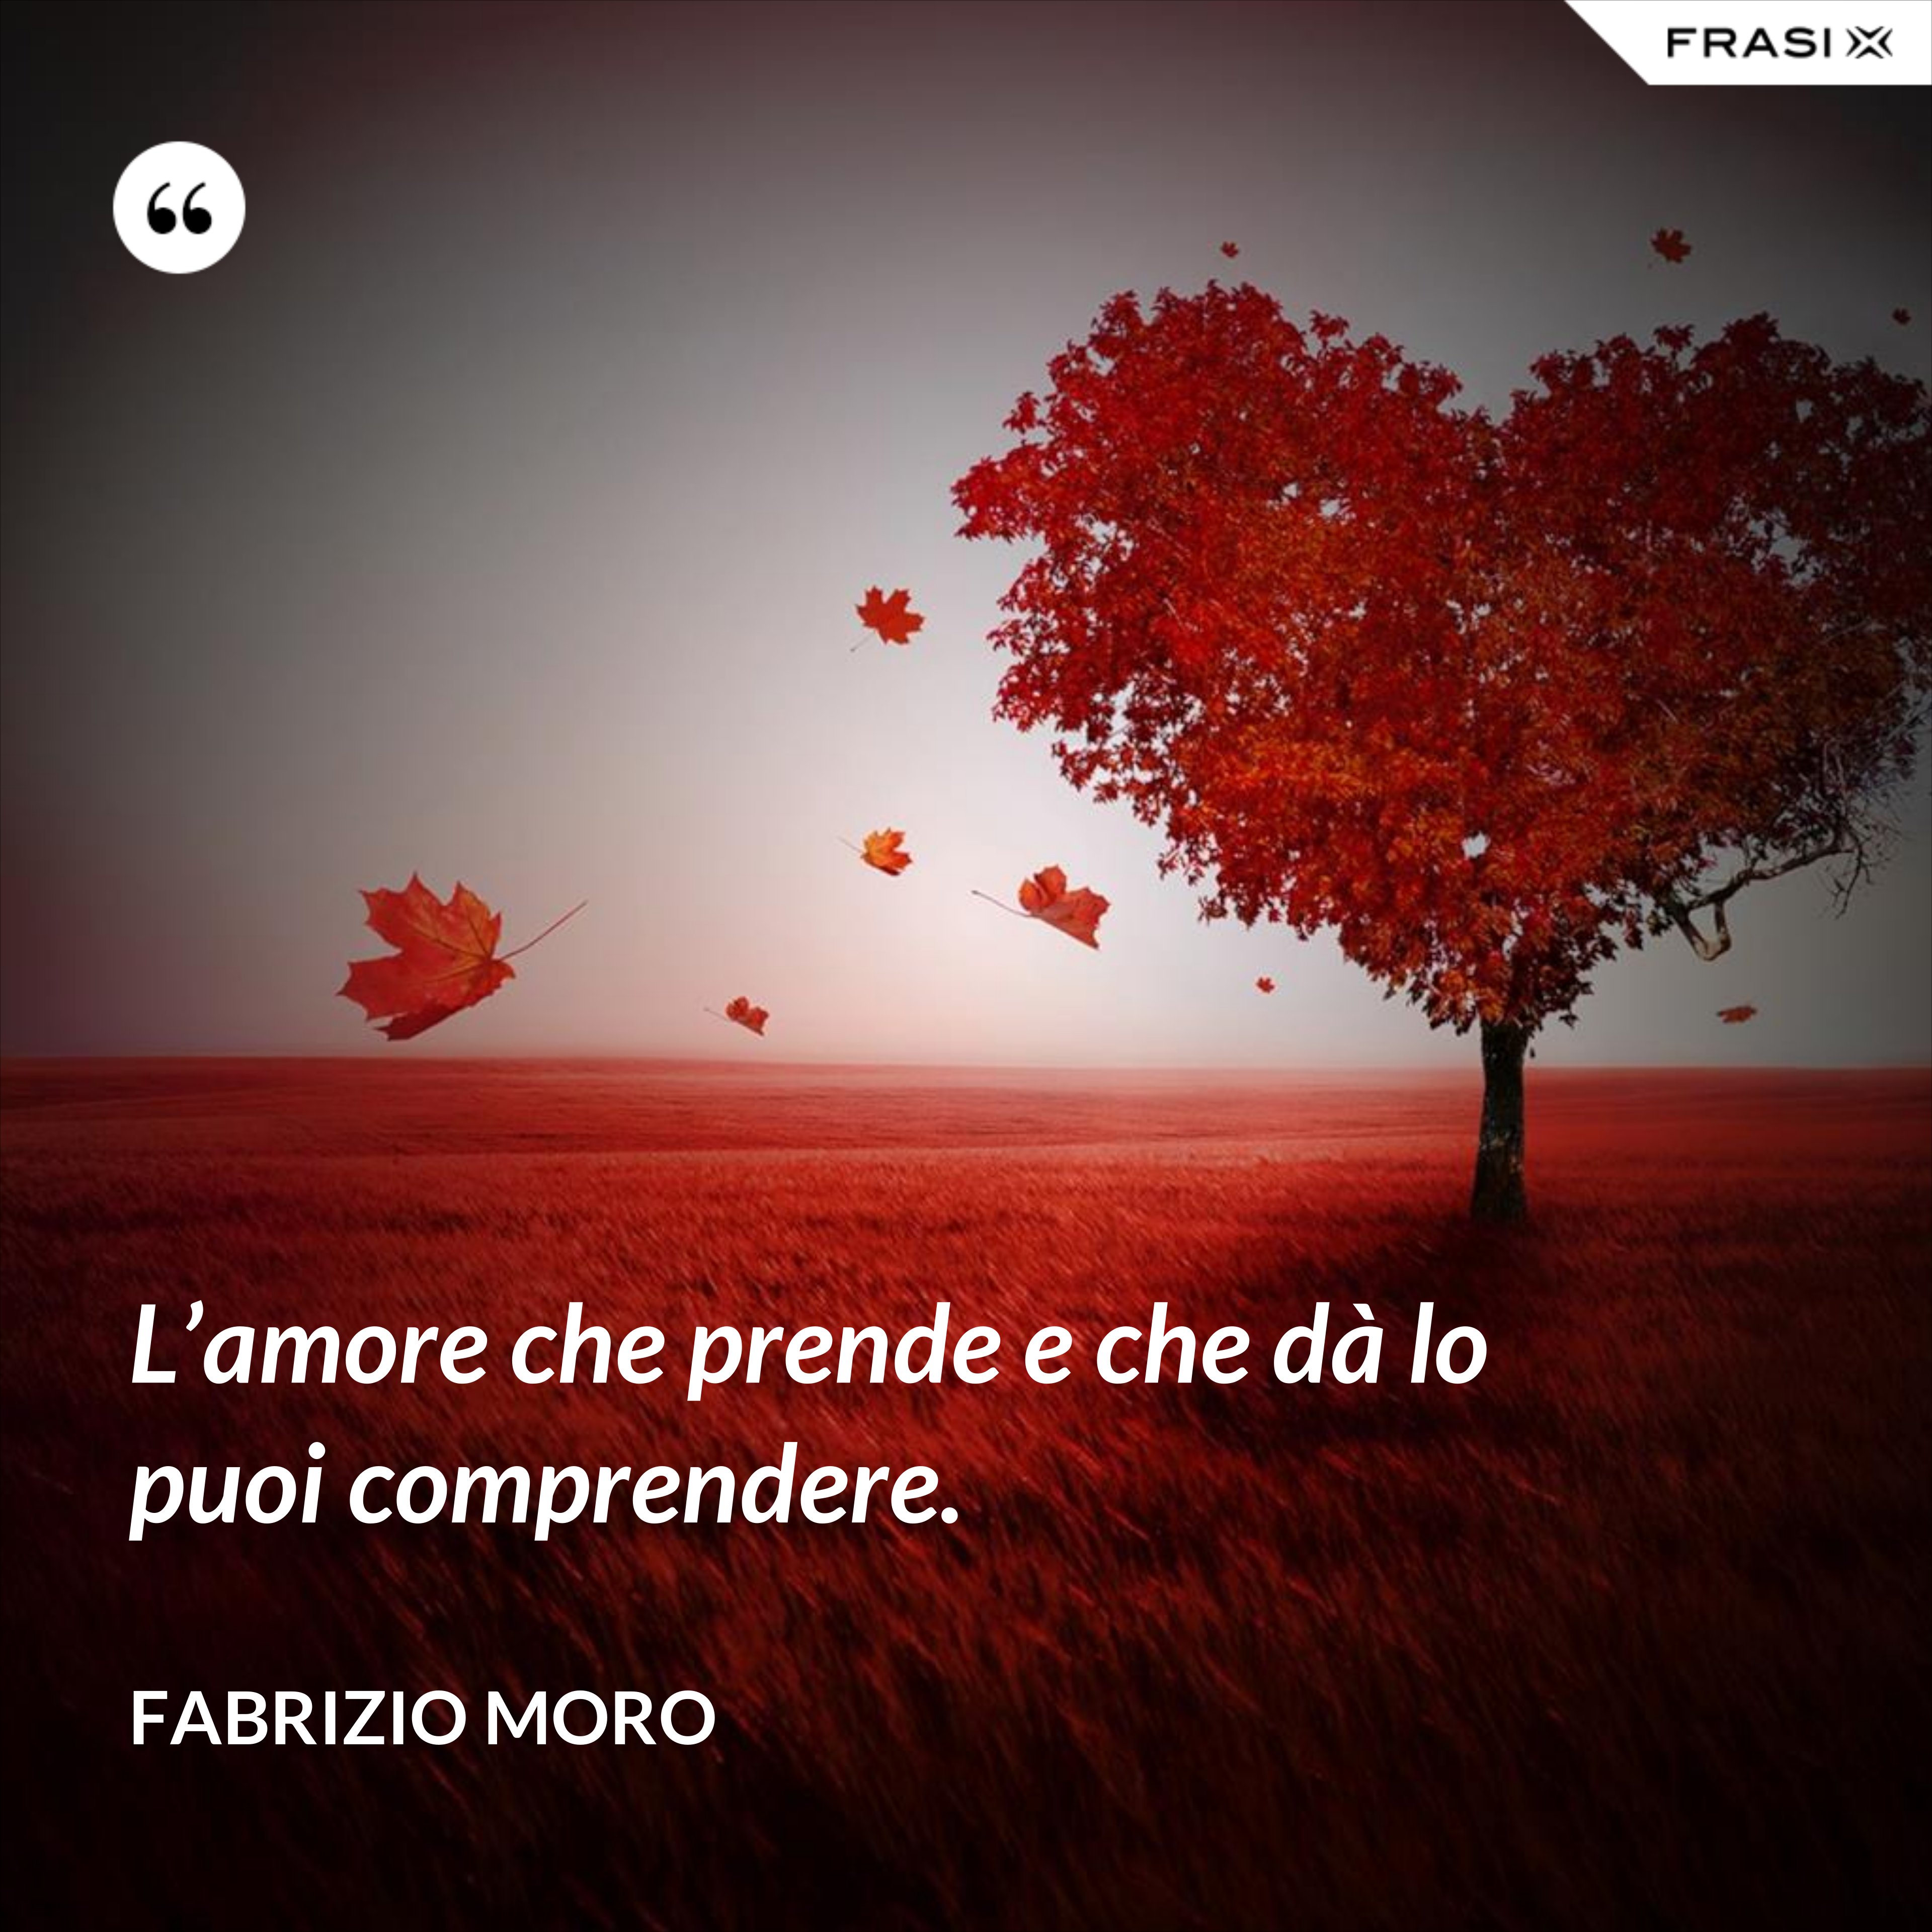 L’amore che prende e che dà lo puoi comprendere. - Fabrizio Moro